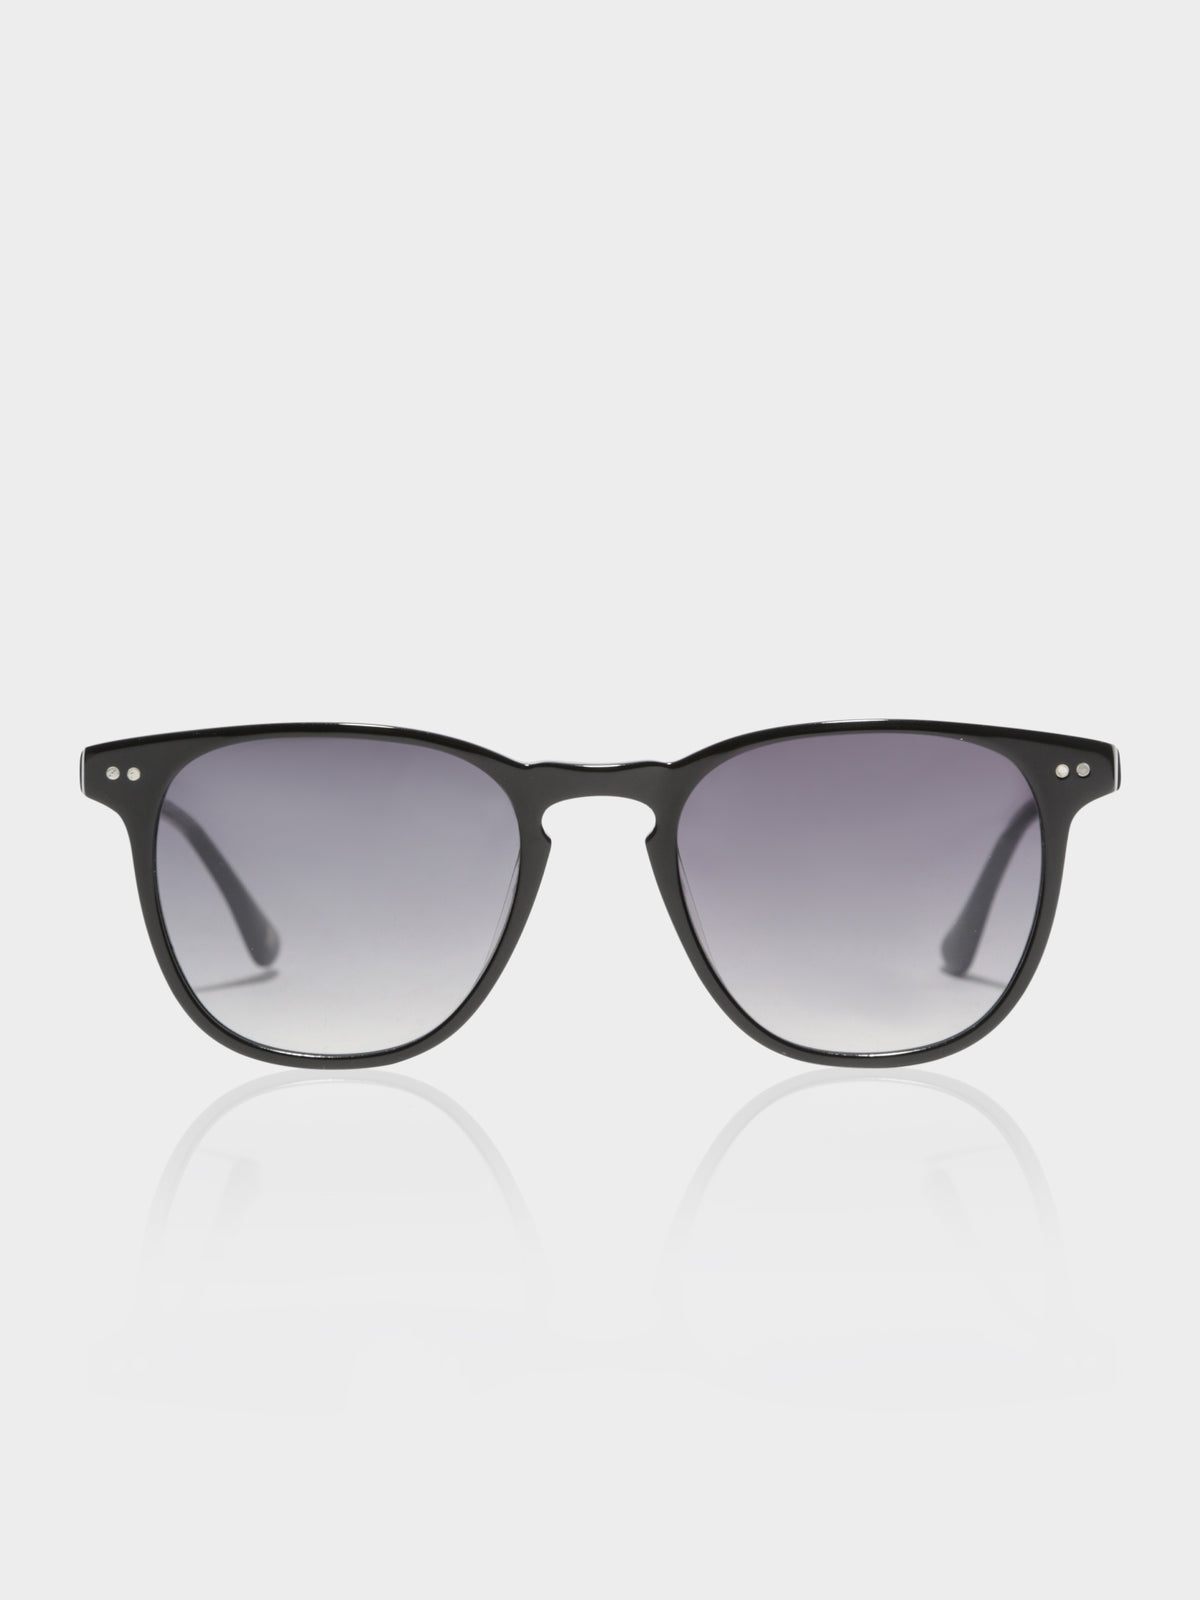 Sardinia Sunglasses in Black